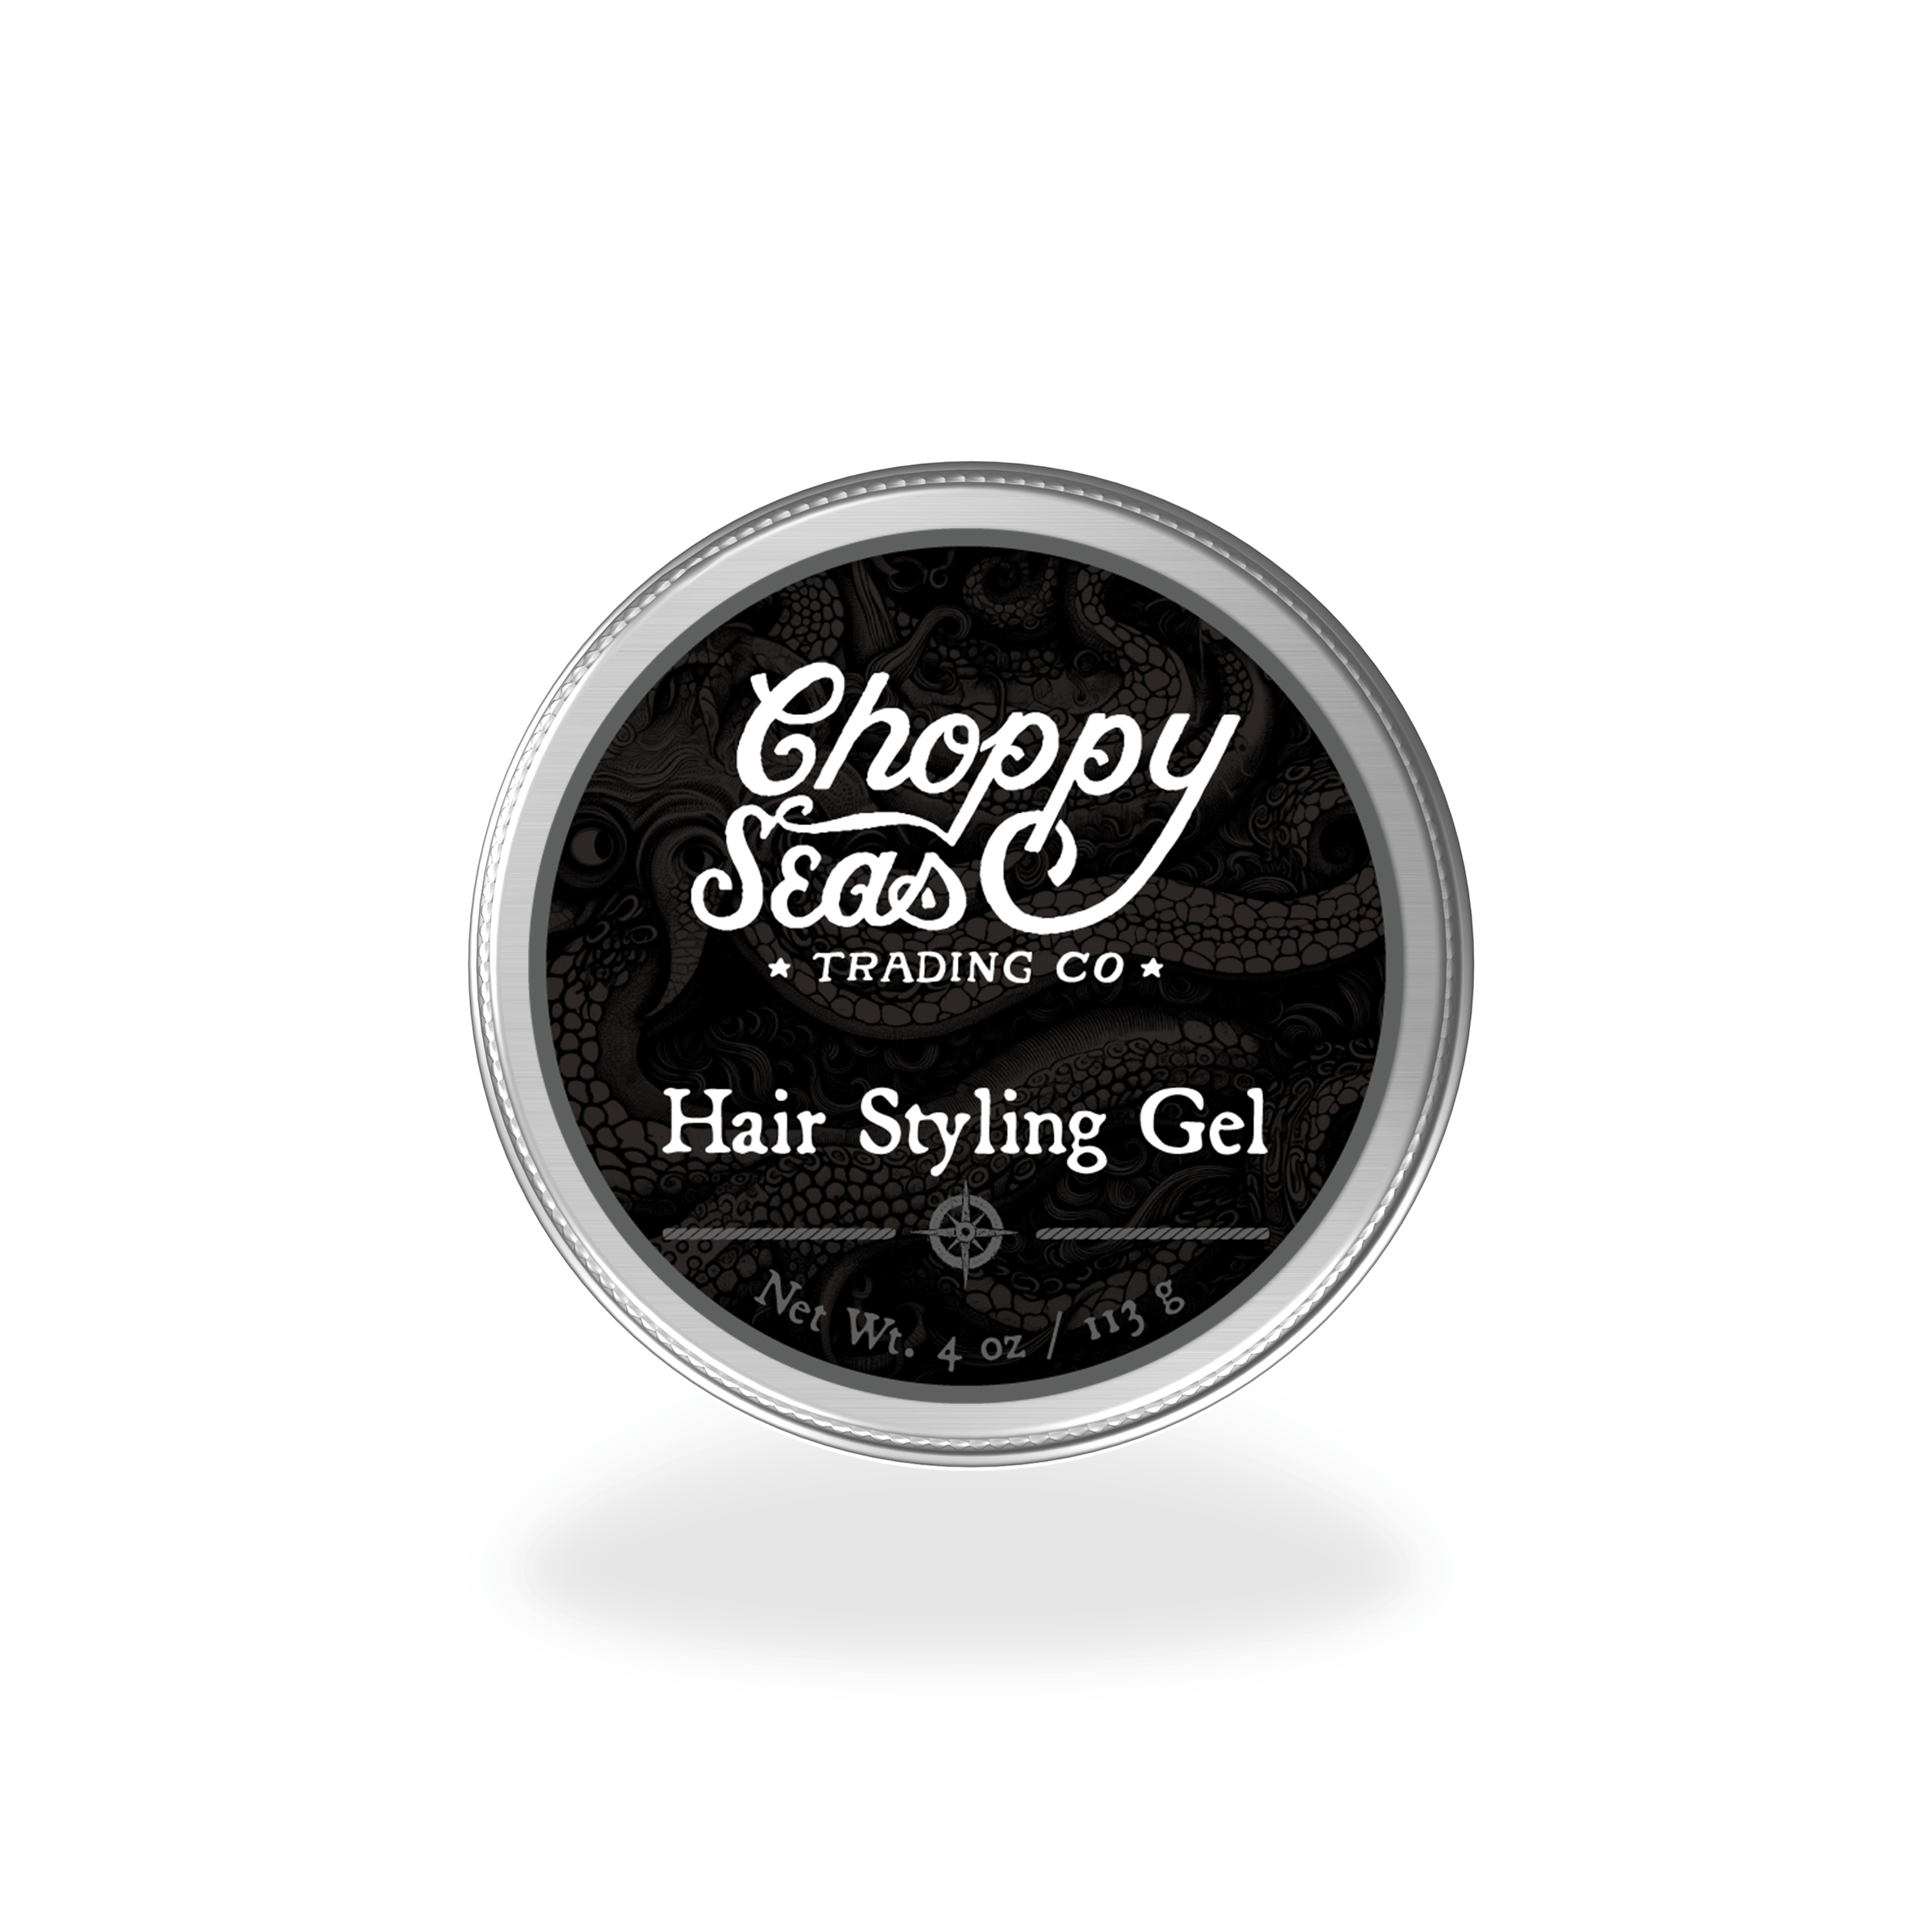 Choppy Seas Hair Styling Gel